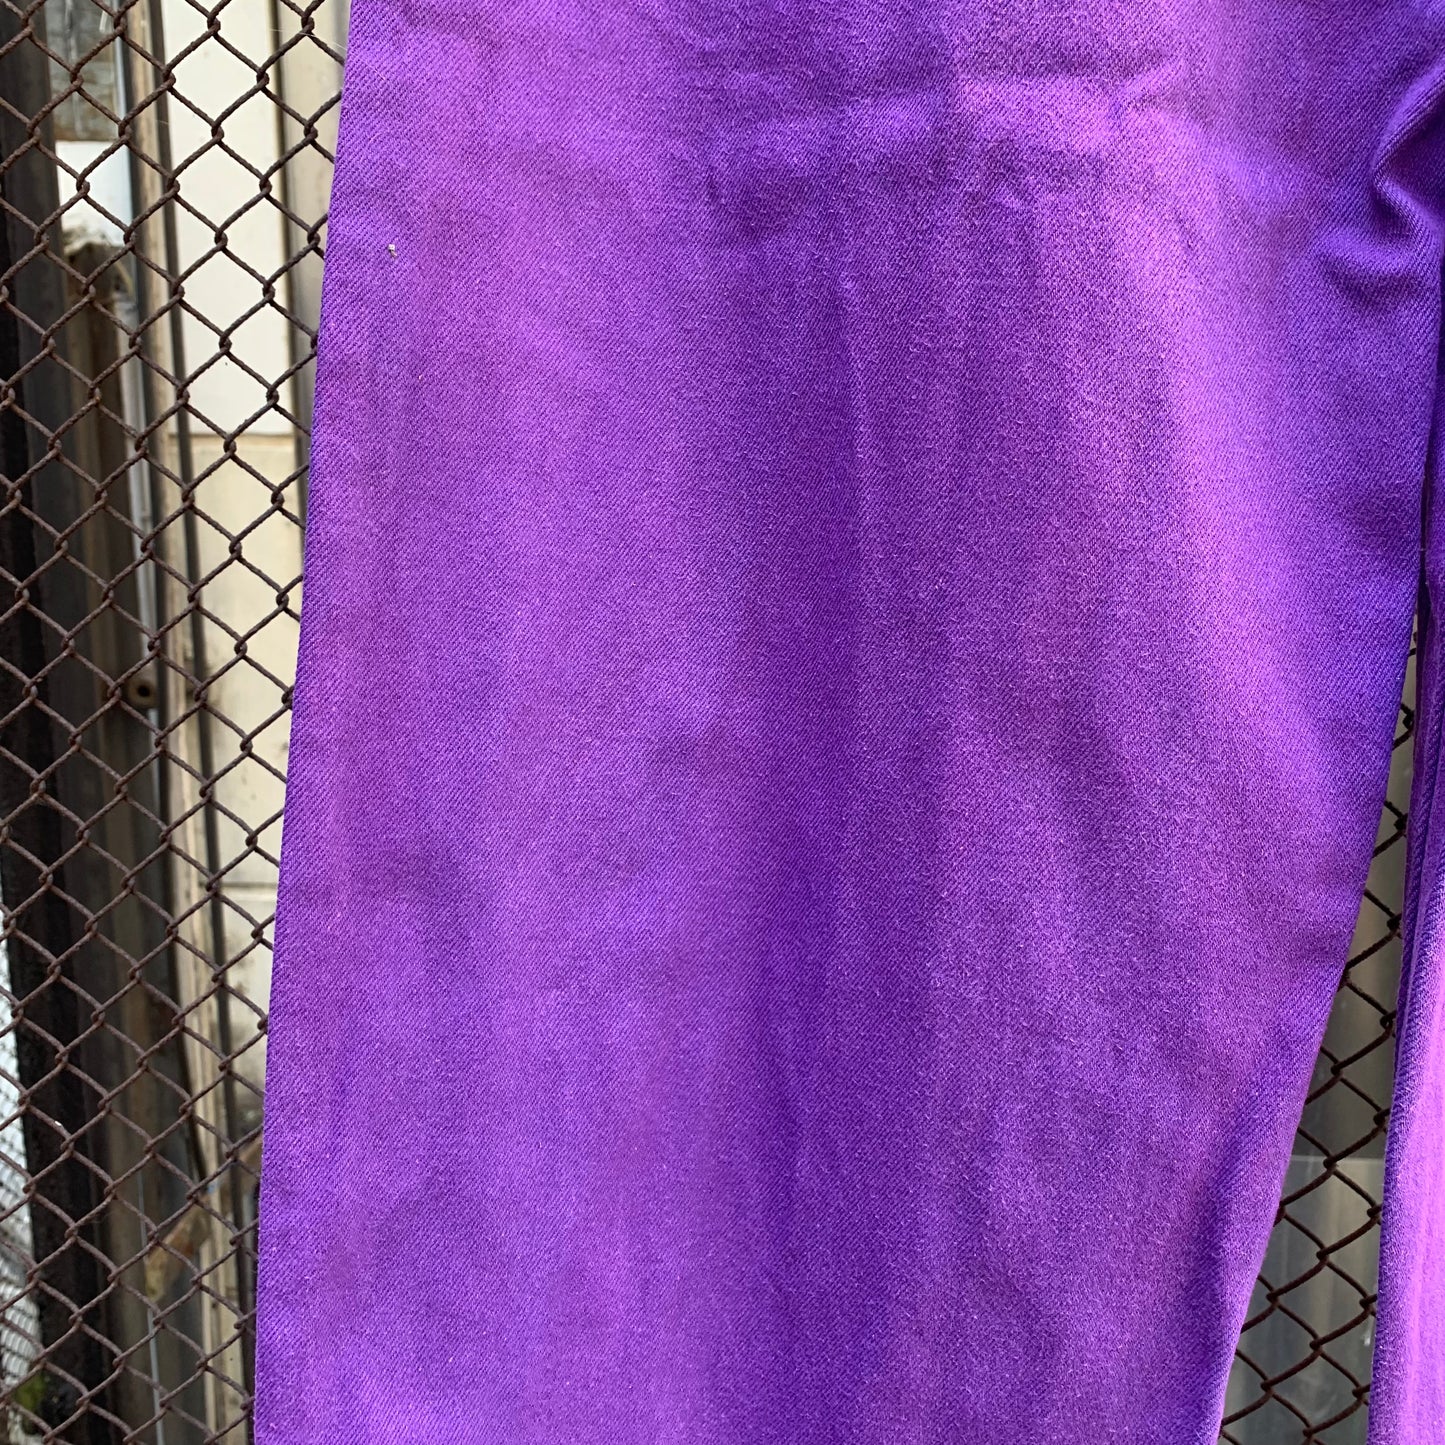 Purple Carpenters Pants